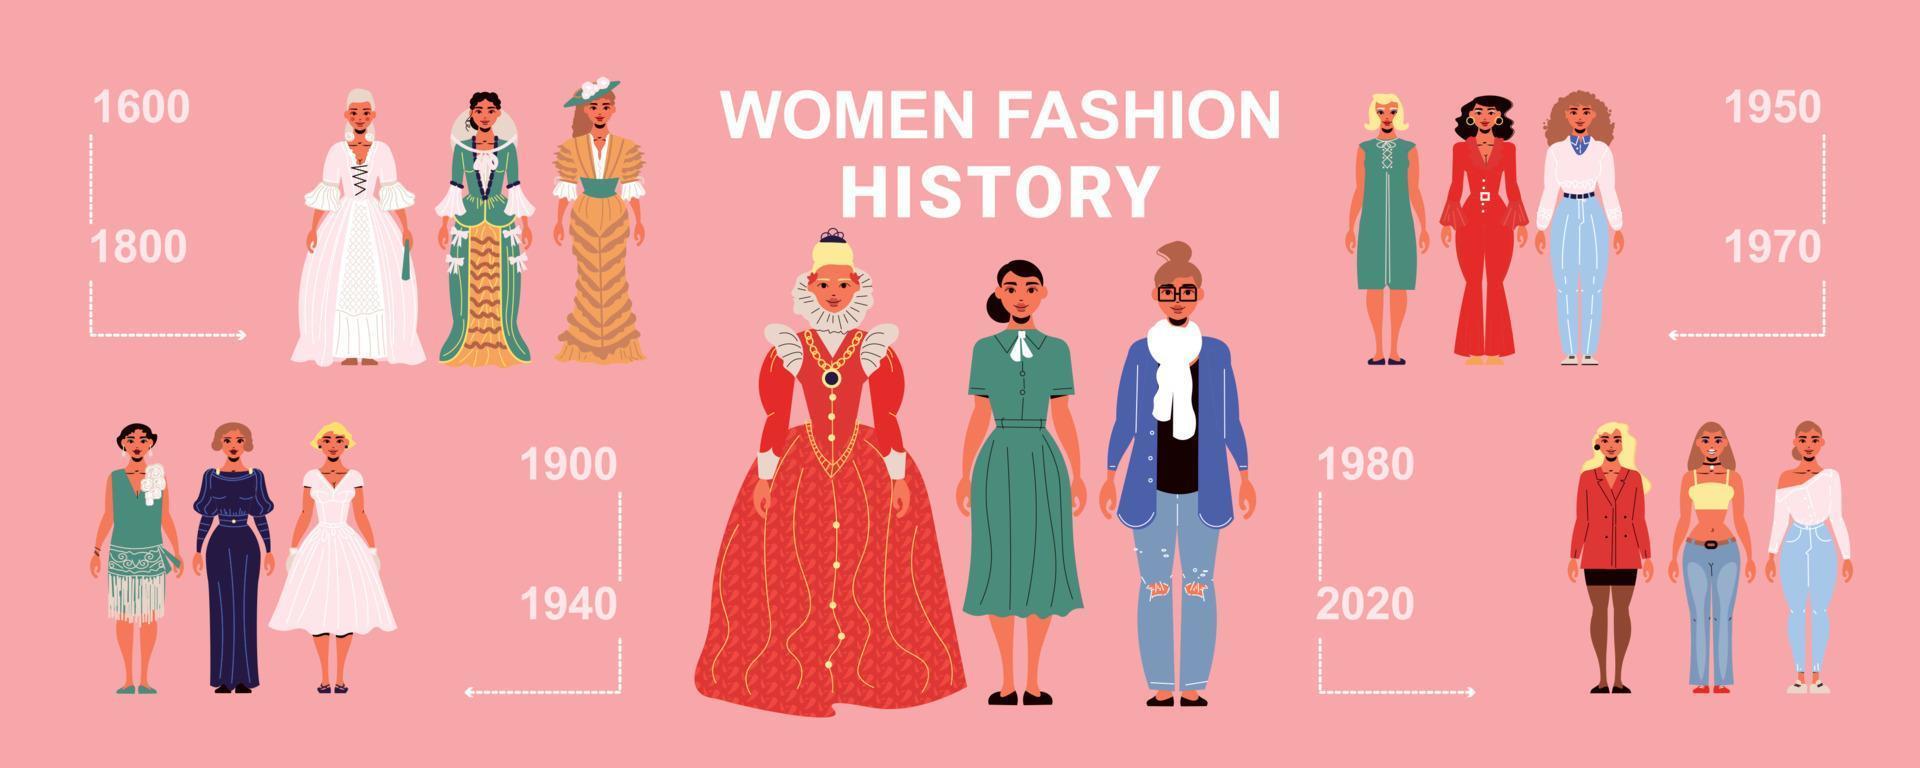 ilustração da história da moda feminina vetor